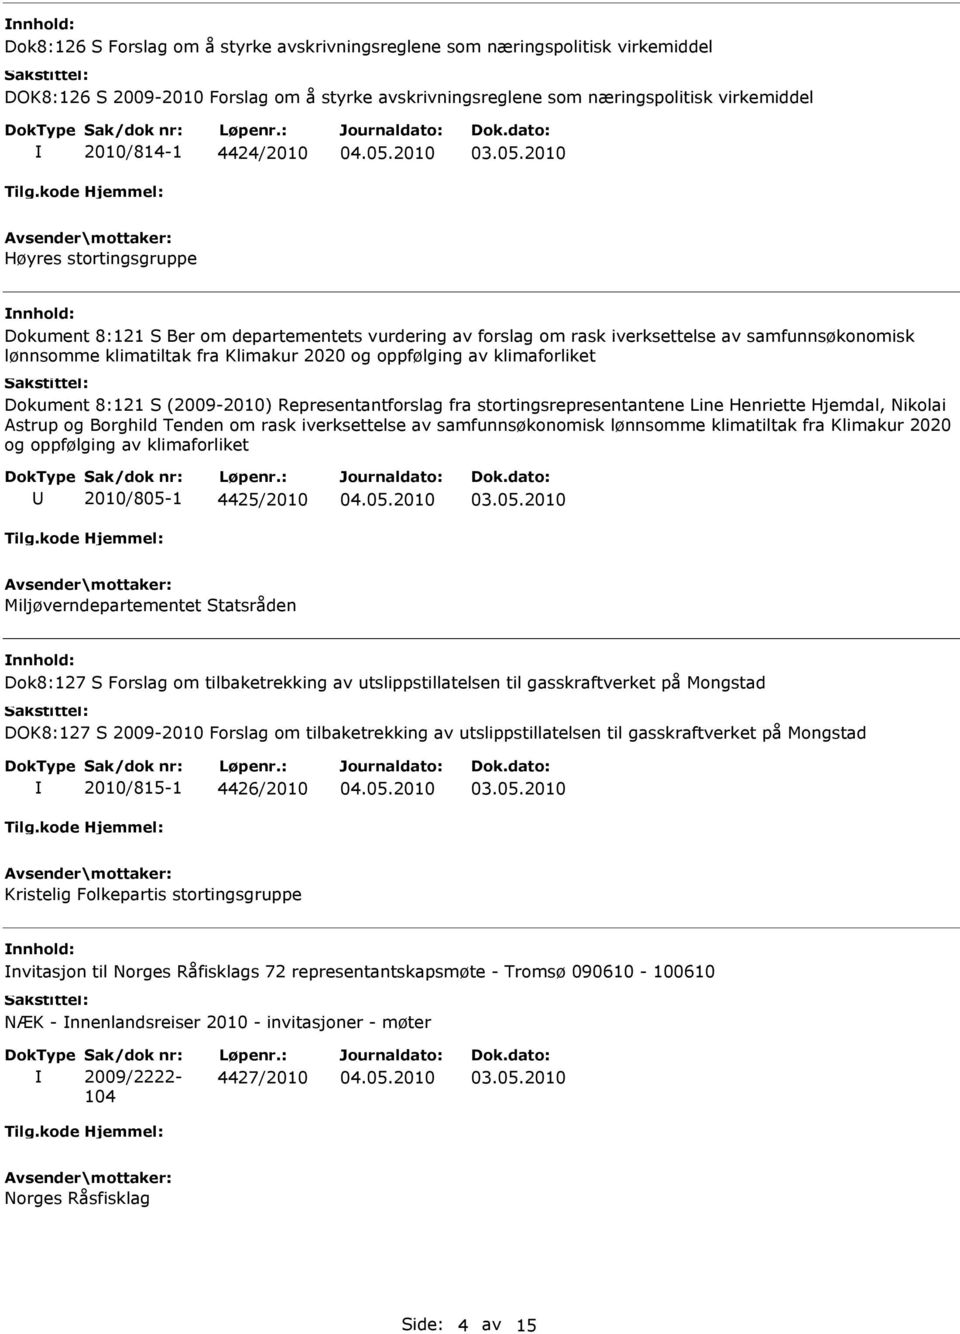 Dokument 8:121 S (2009-2010) Representantforslag fra stortingsrepresentantene Line Henriette Hjemdal, Nikolai Astrup og Borghild Tenden om rask iverksettelse av samfunnsøkonomisk lønnsomme